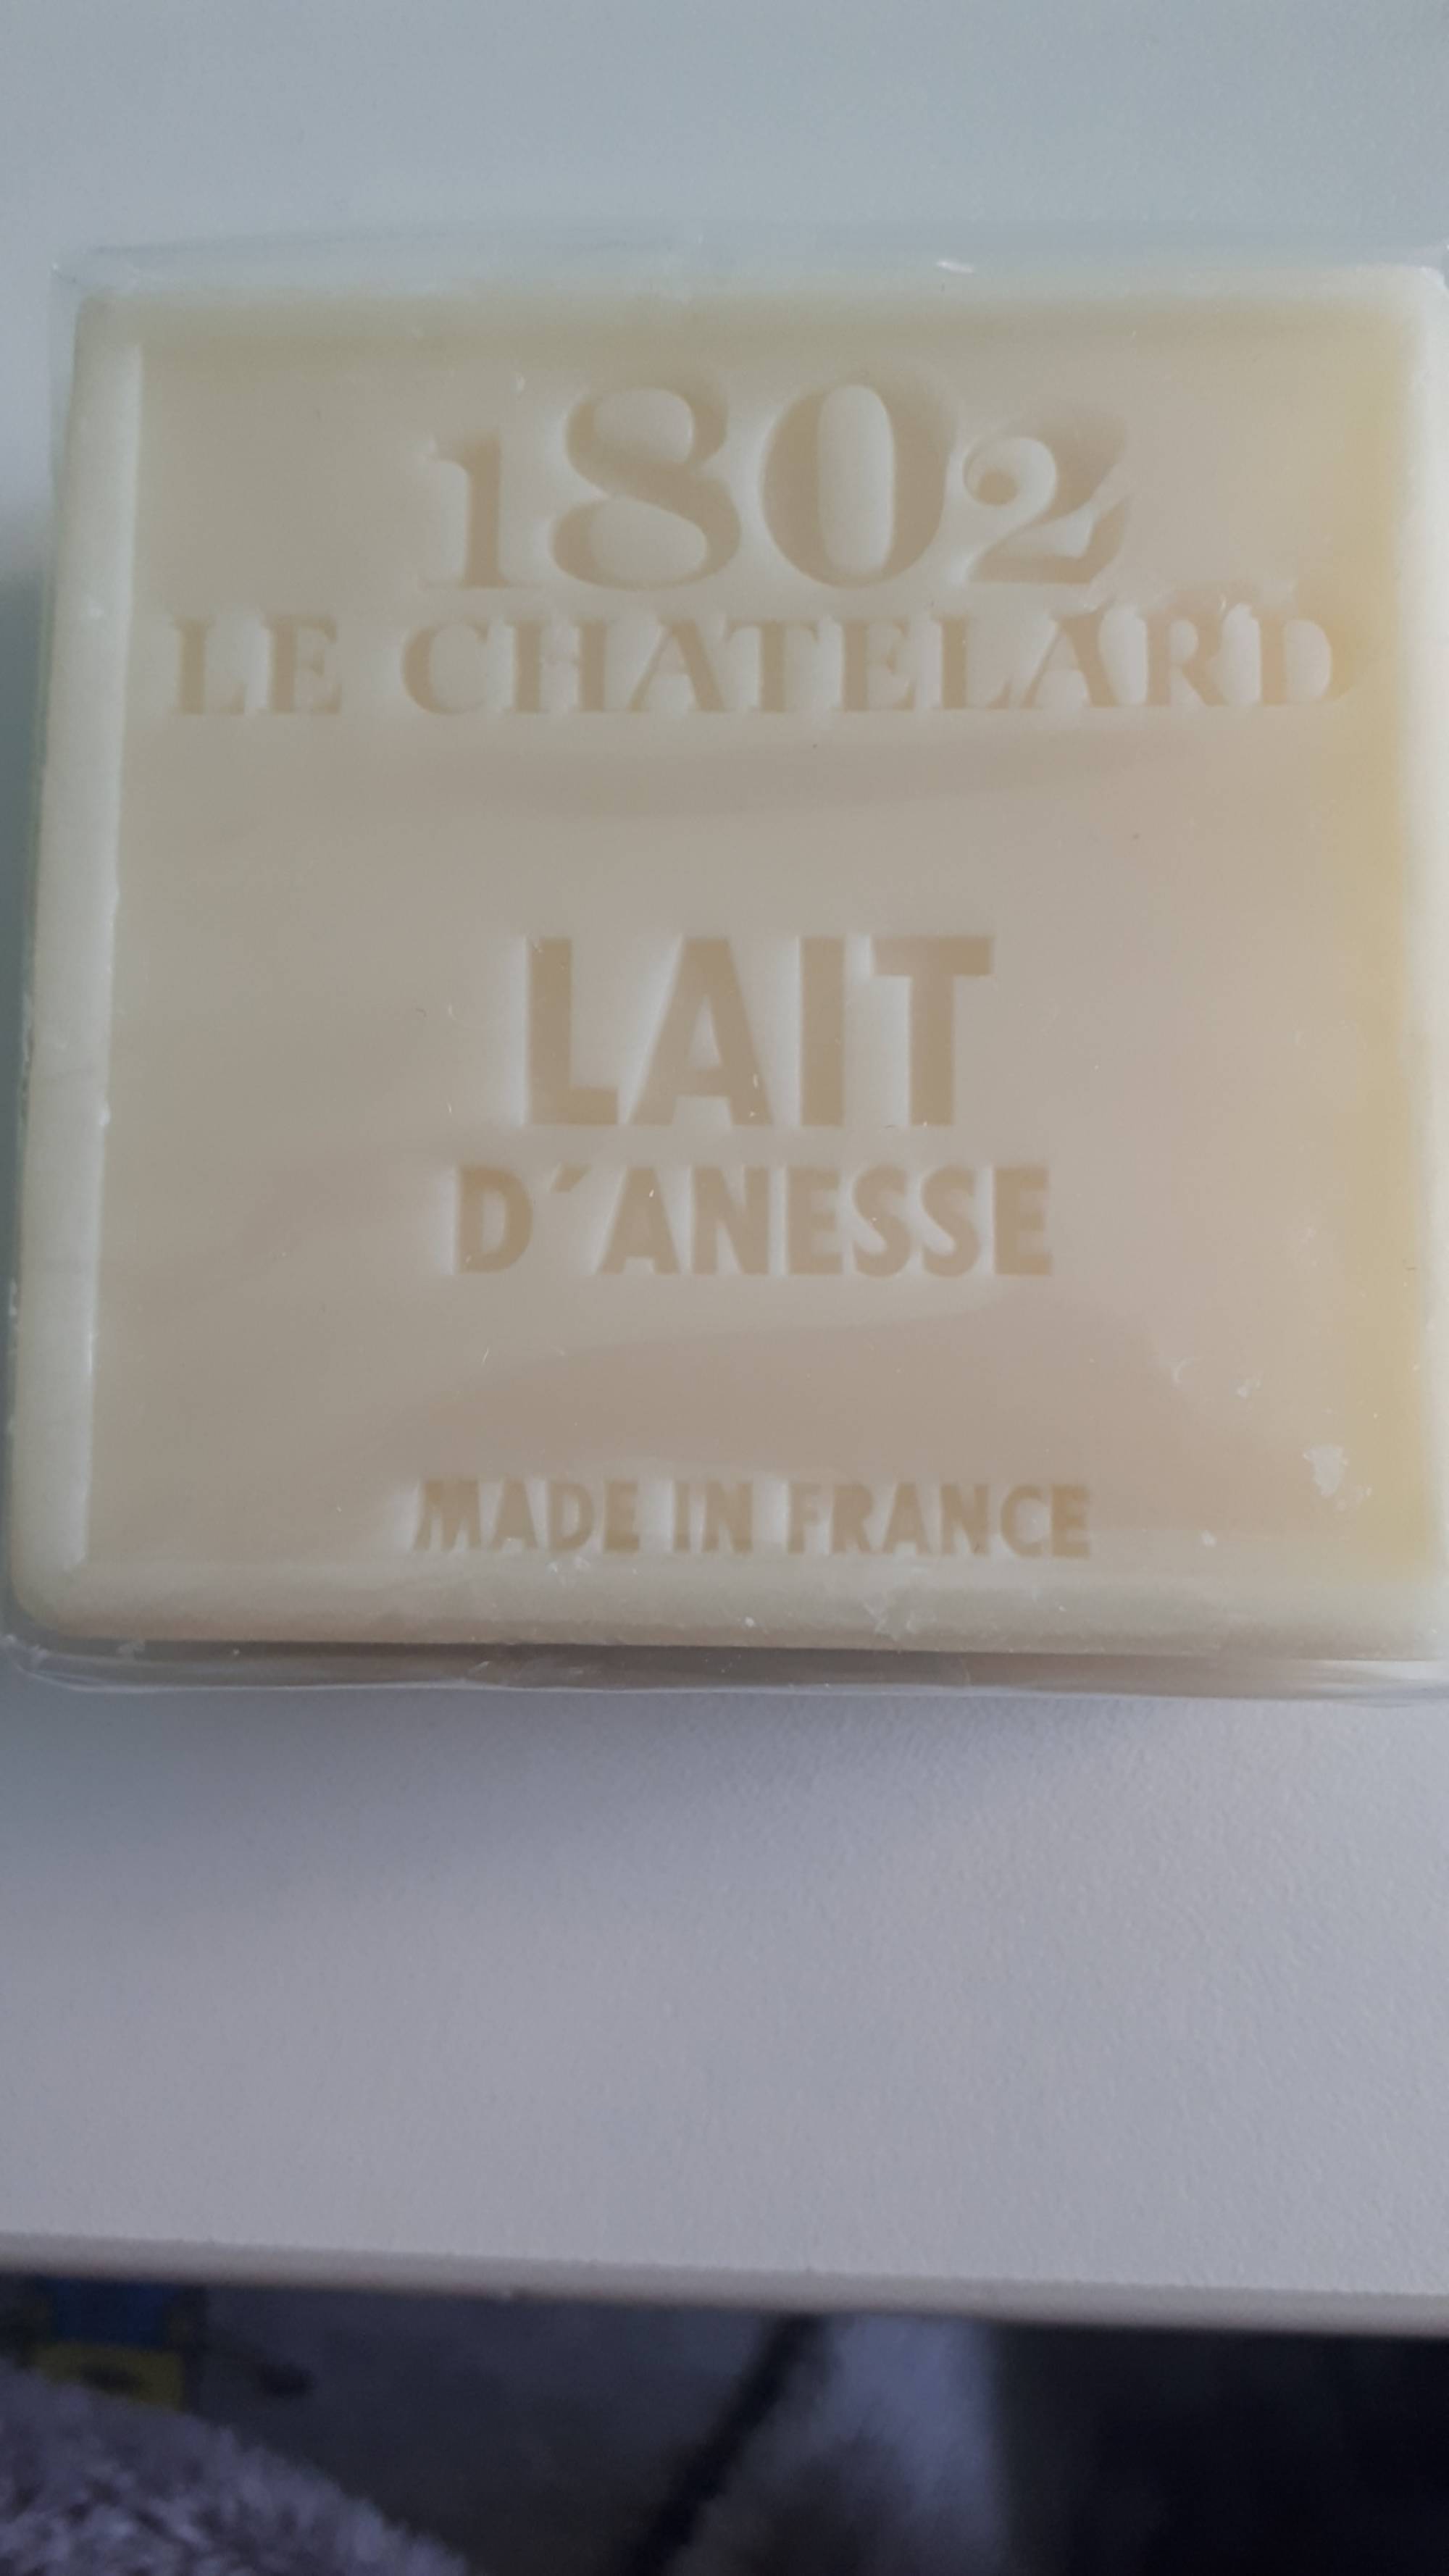 1802 LE CHATELARD - Lait d'Anesse - Savon